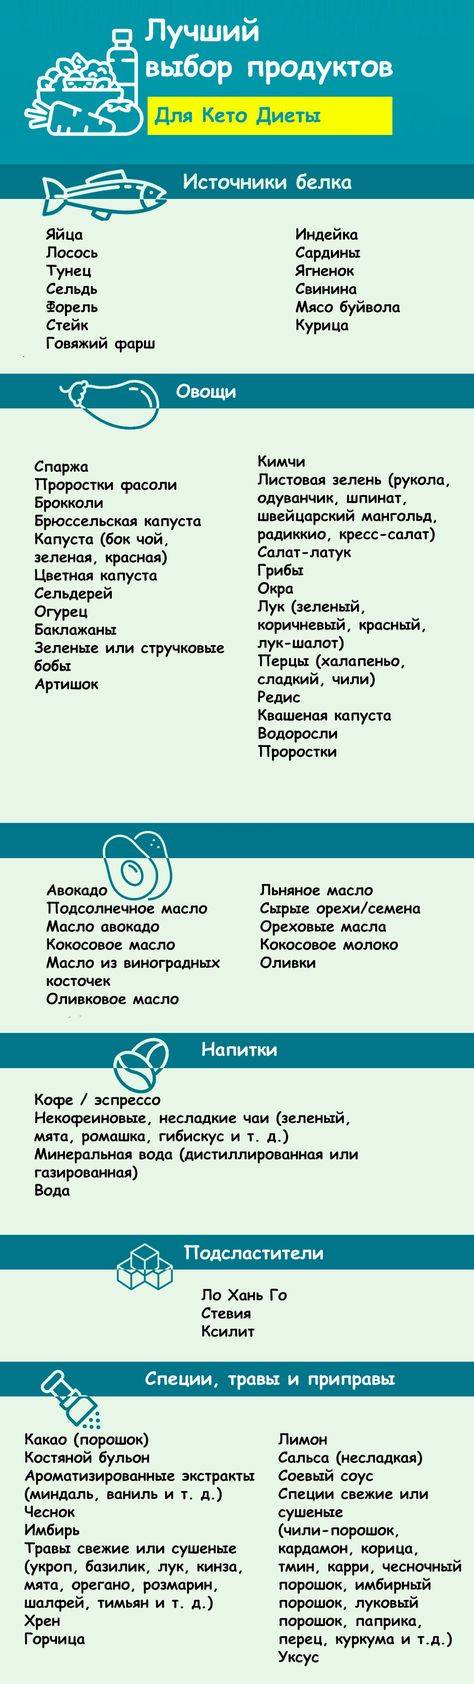 Кето-диета: меню на неделю, отзывы - medside.ru